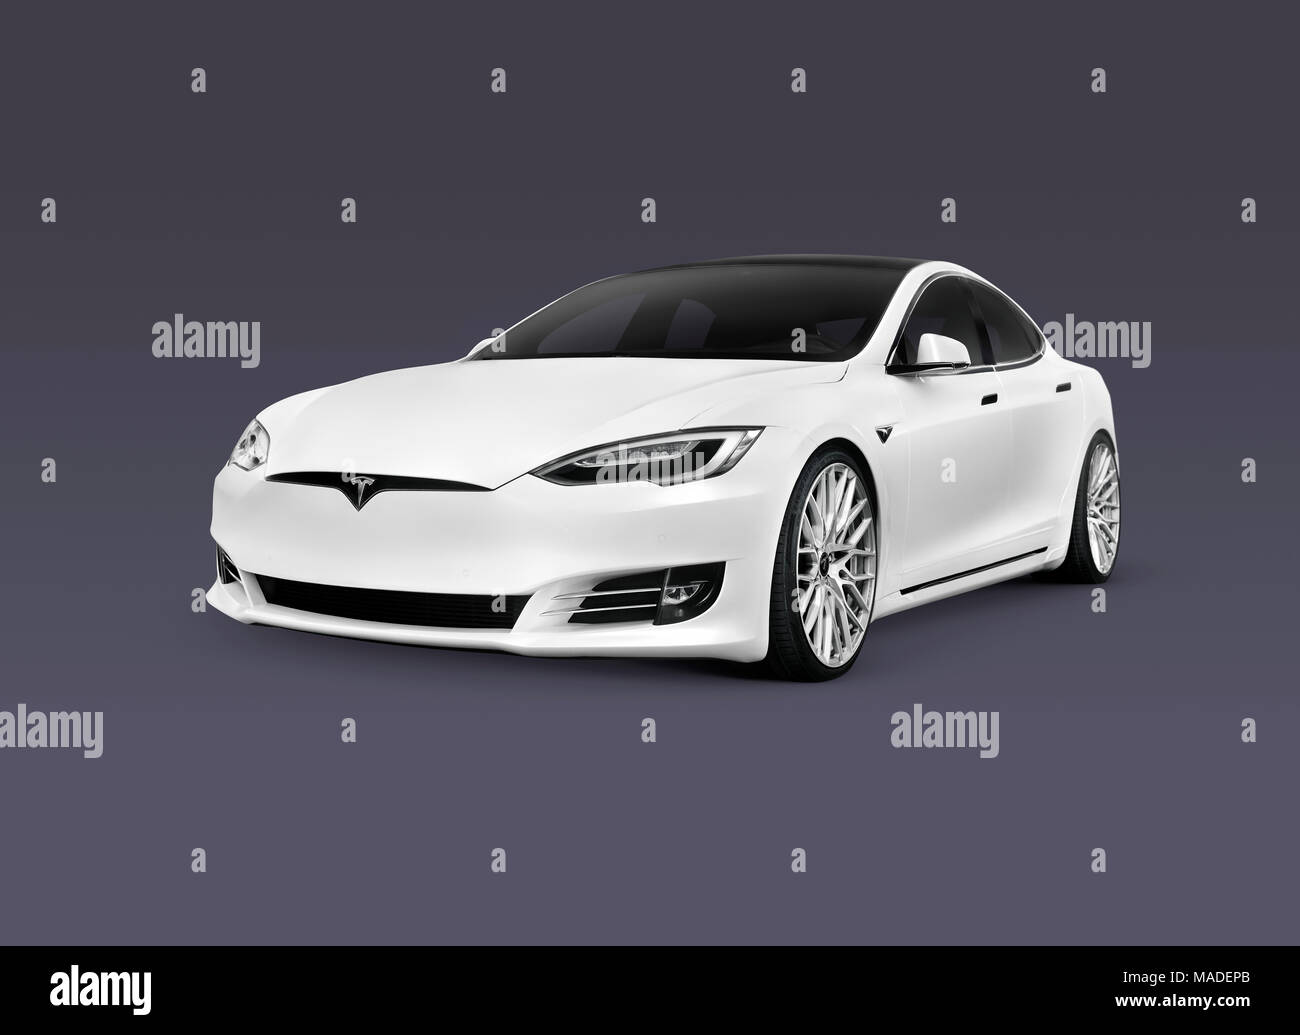 Licenza e stampe alle ore MaximImages.com:2018 - 18:00 Tesla Model S, auto elettrica bianca di lusso isolata su sfondo grigio blu scuro con un percorso di ritaglio Foto Stock